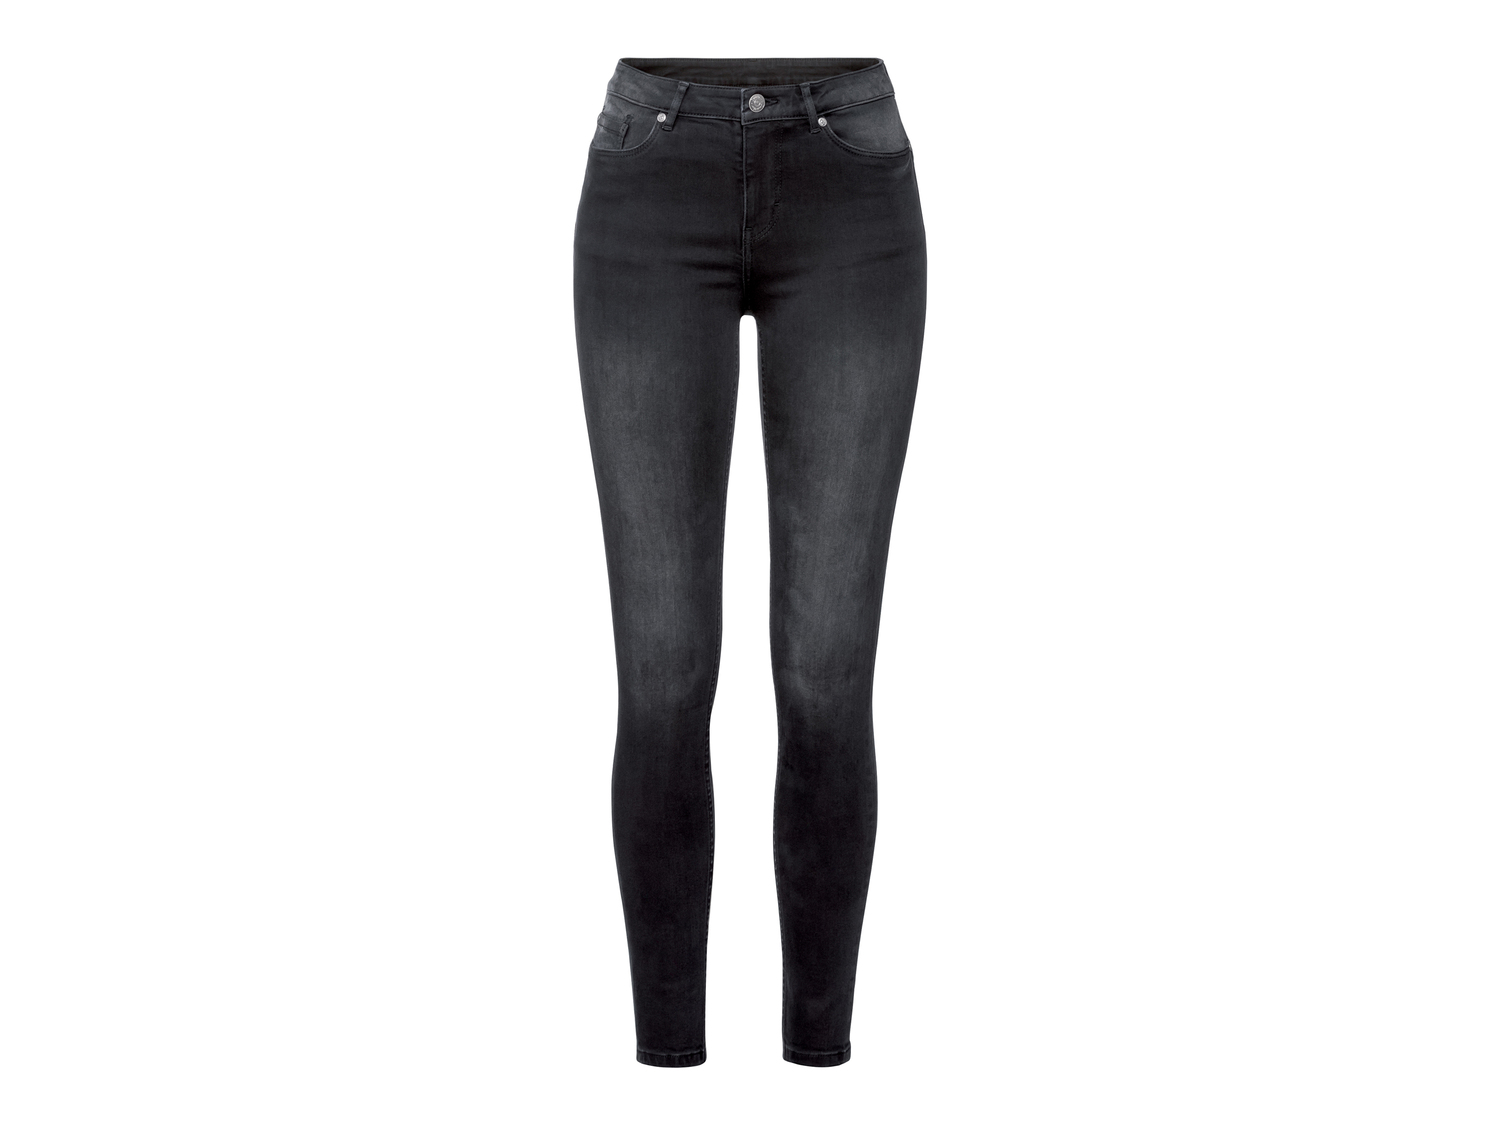 Jeans Super Skinny Esmara, prezzo 12.99 &#8364; 
Misure: 38-48
Taglie disponibili

Caratteristiche

- ...